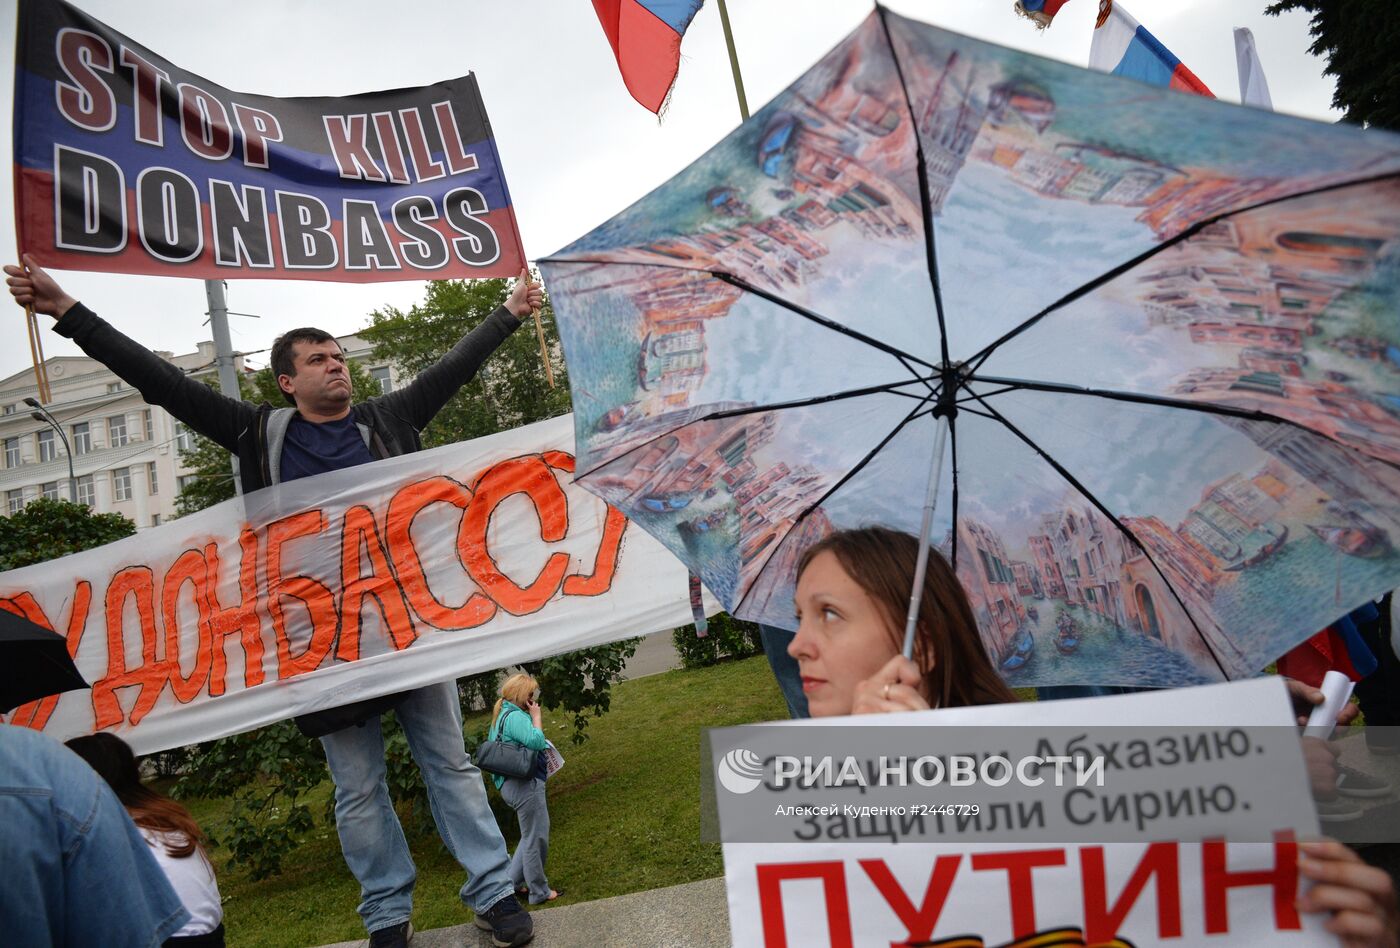 Митинг в поддержку народа Юго-Востока Украины "Стоим за Донбасс"